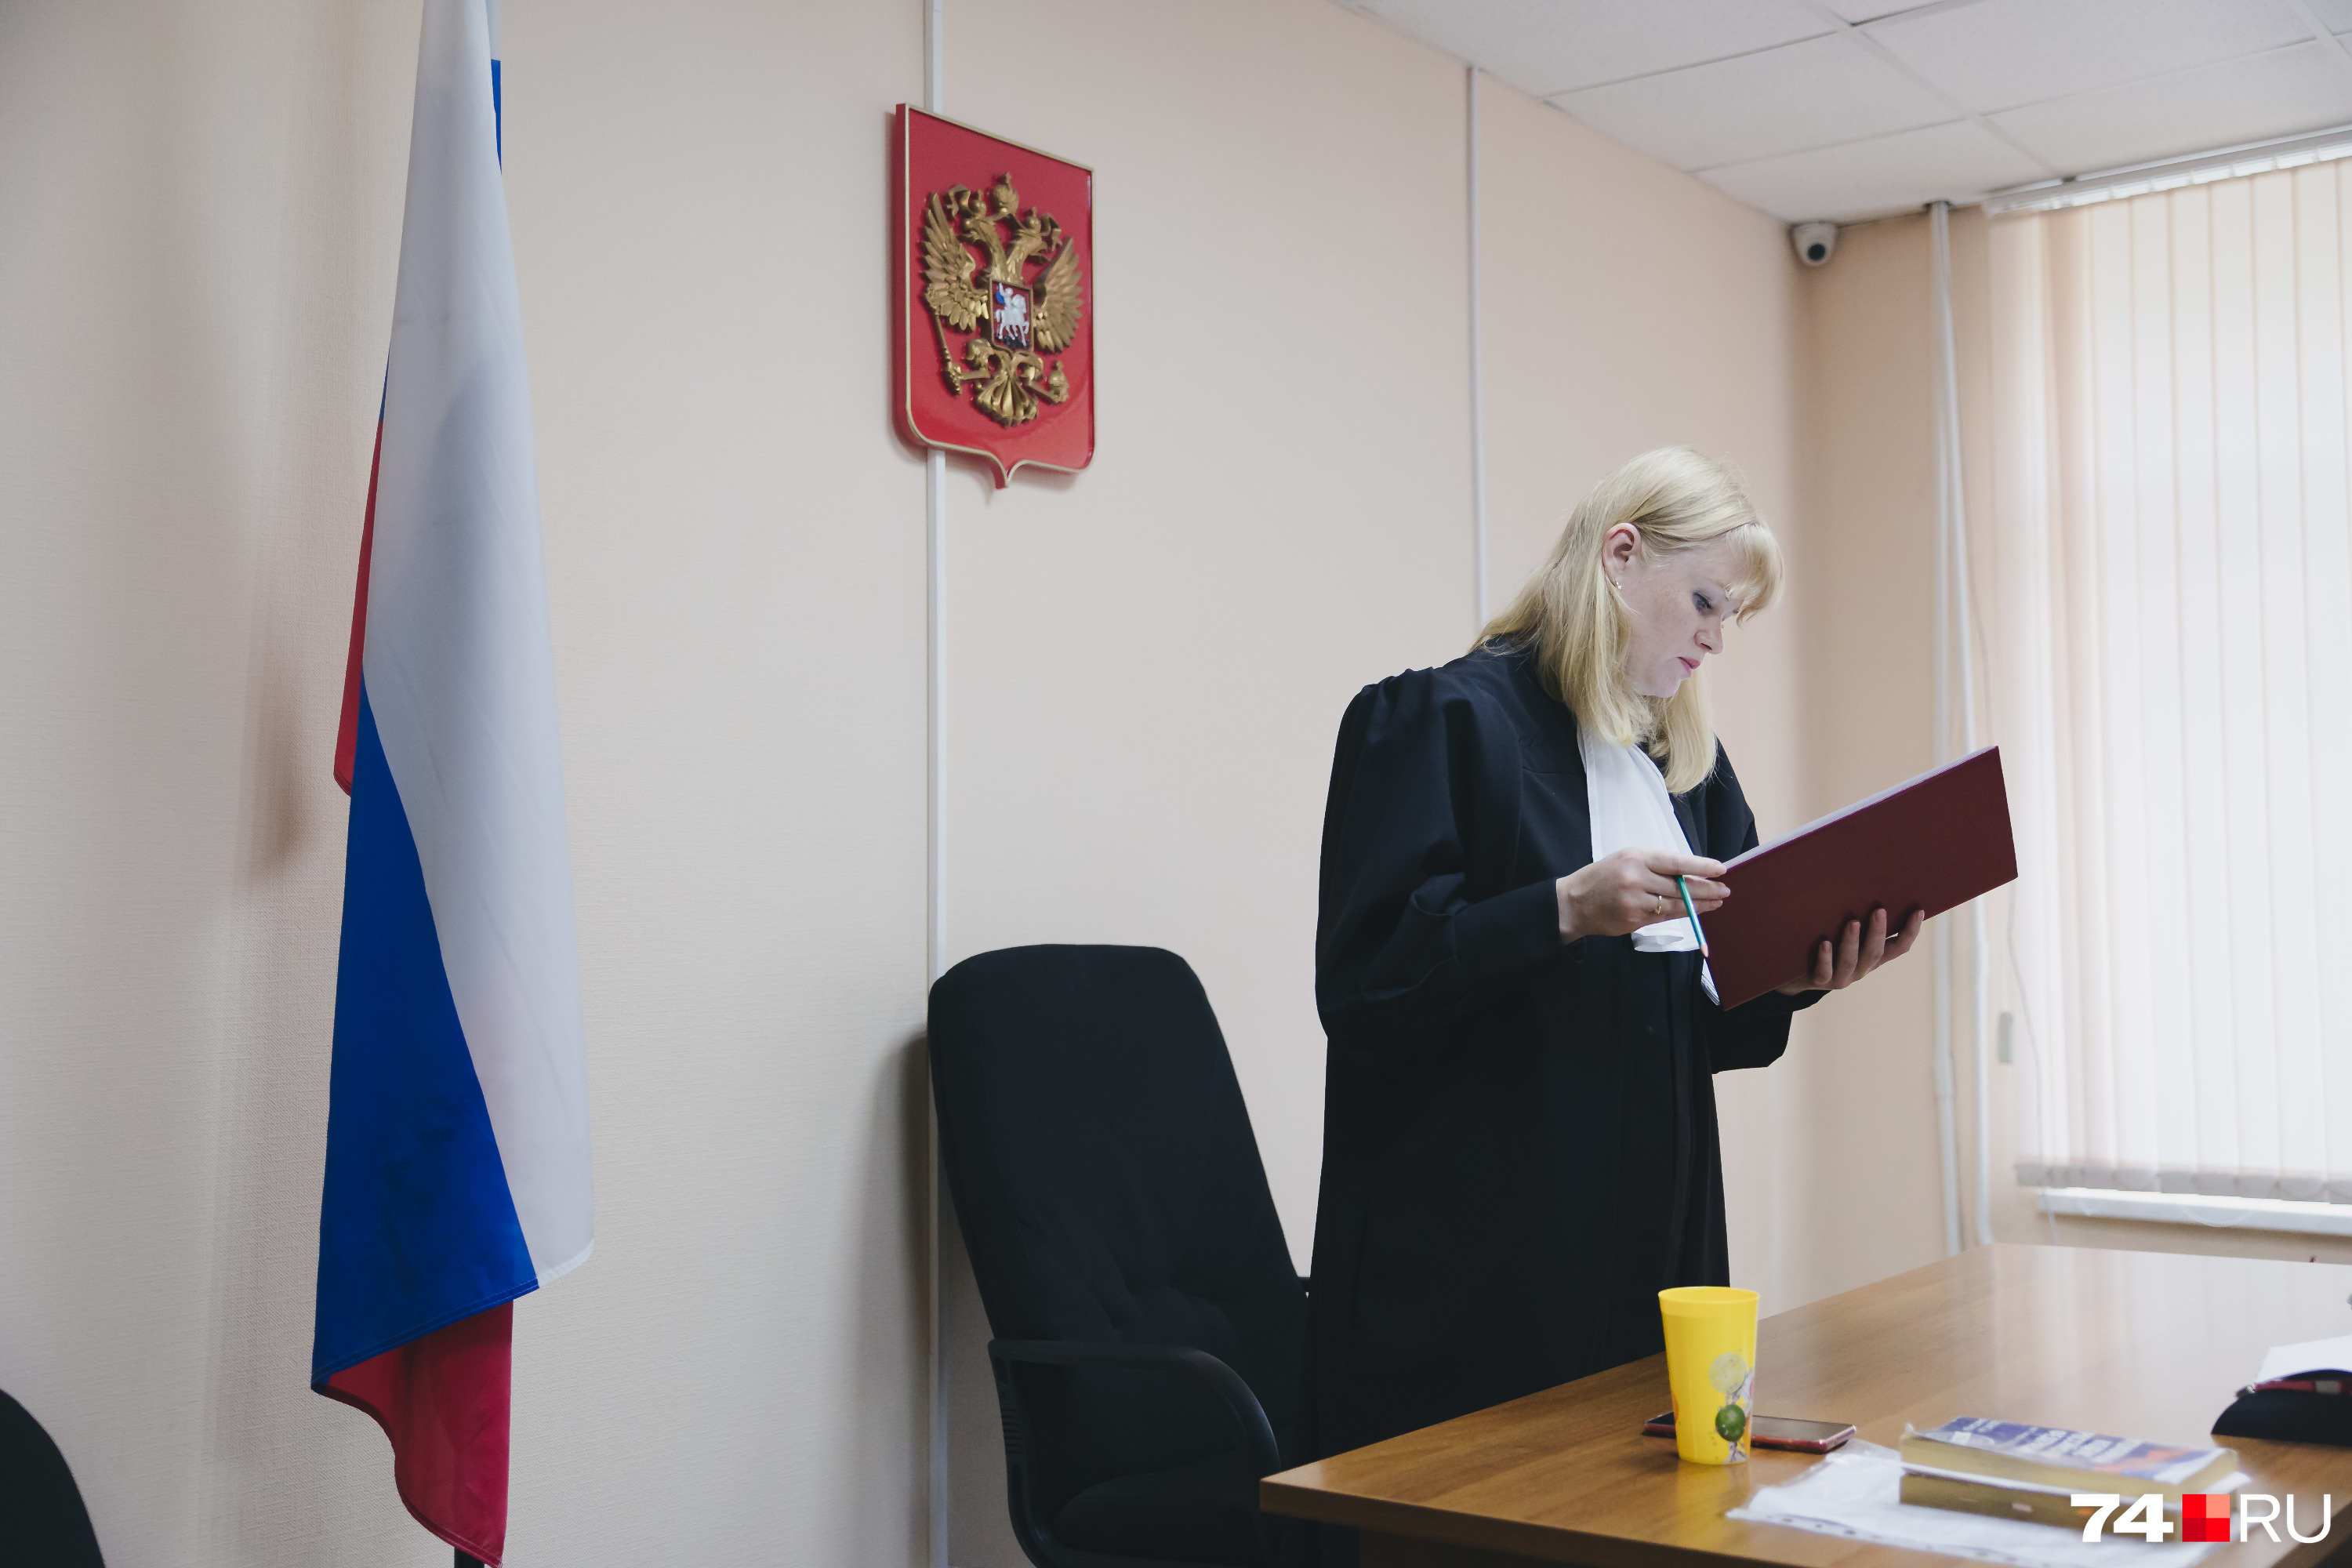 Судья Мария Мельникова начала зачитывать приговор в 11 утра, а закончила около 16 часов 